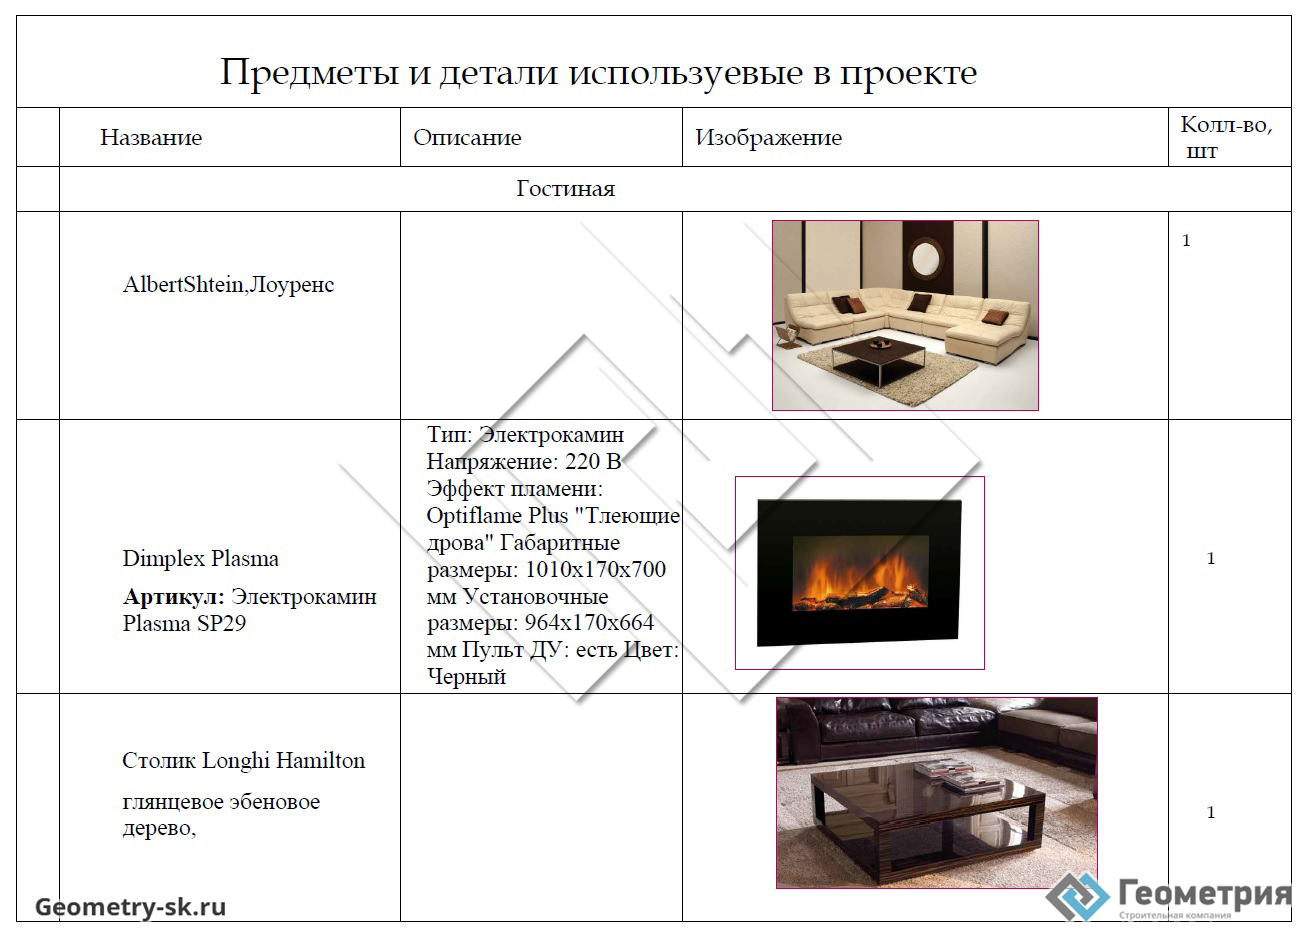 Спецификация мебели в дизайн проекте